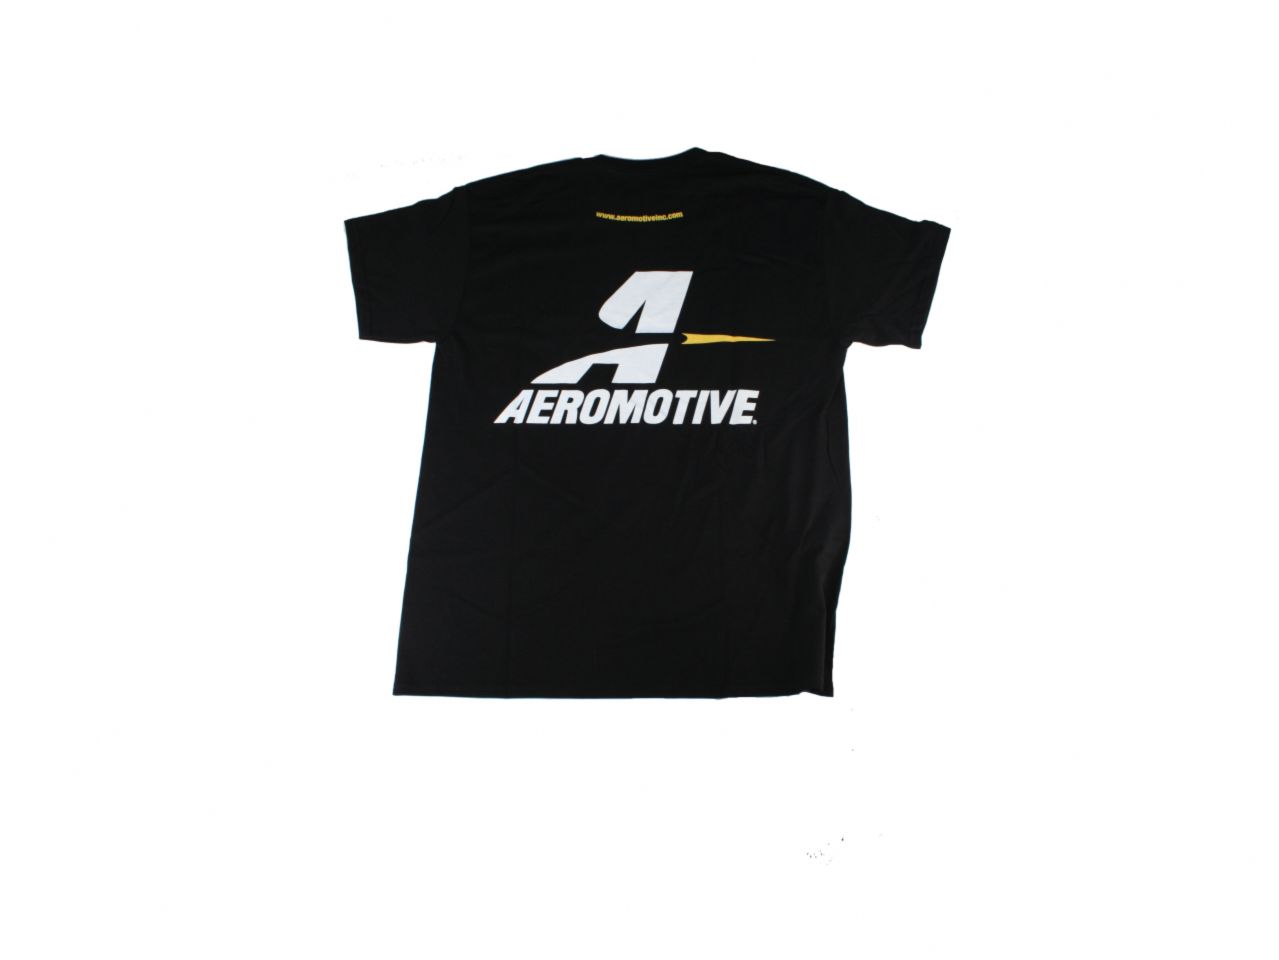 Aeromotive Shirts 91019 Item Image